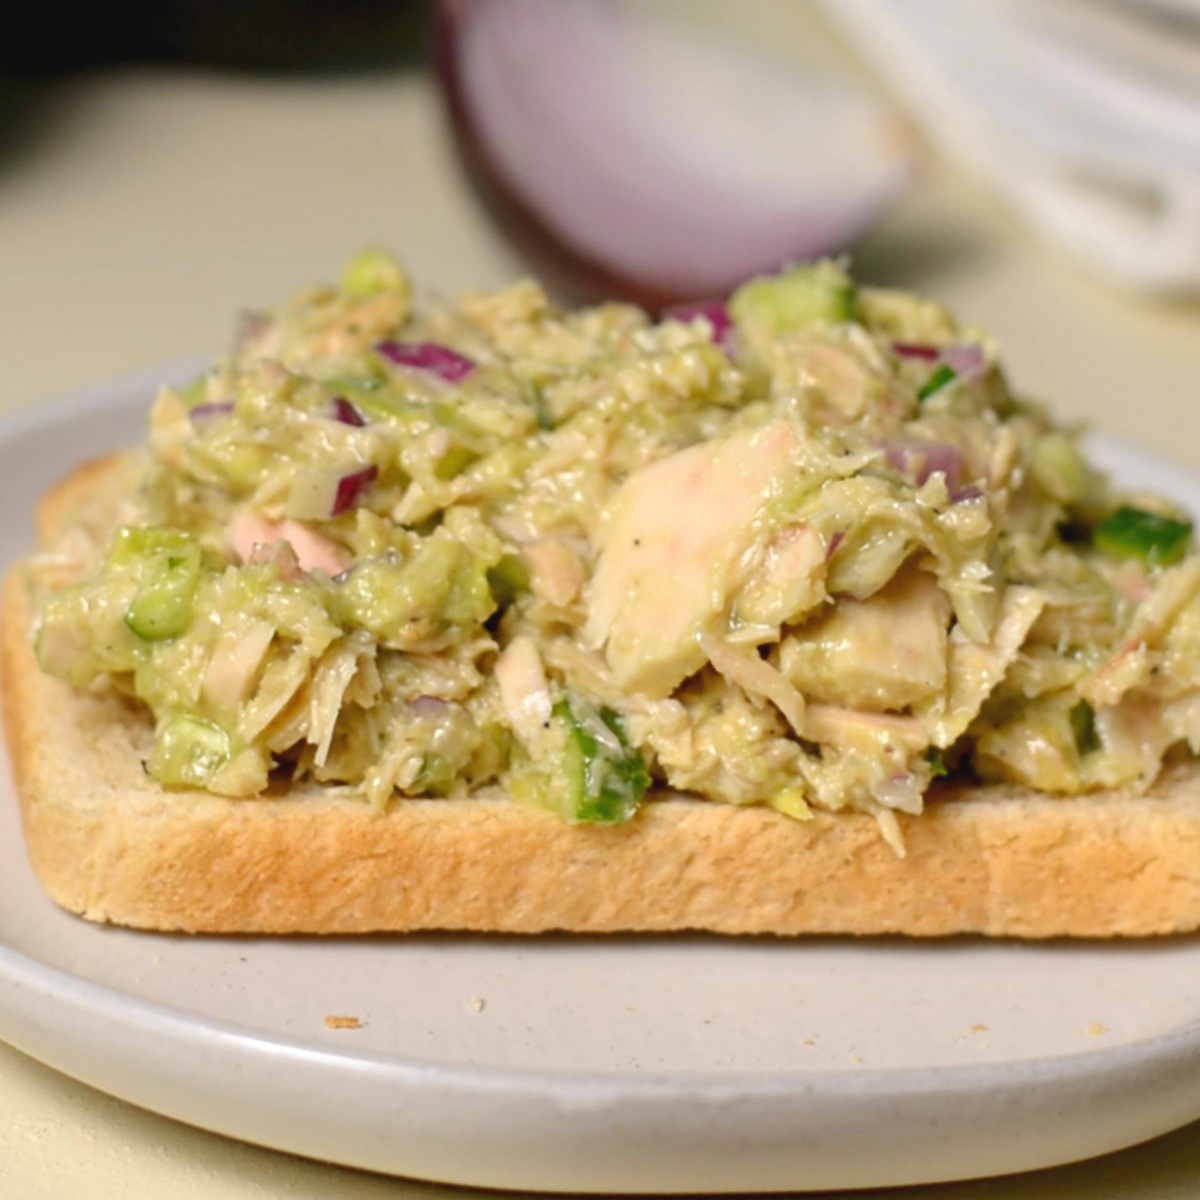 An open face avocado tuna sandwich.